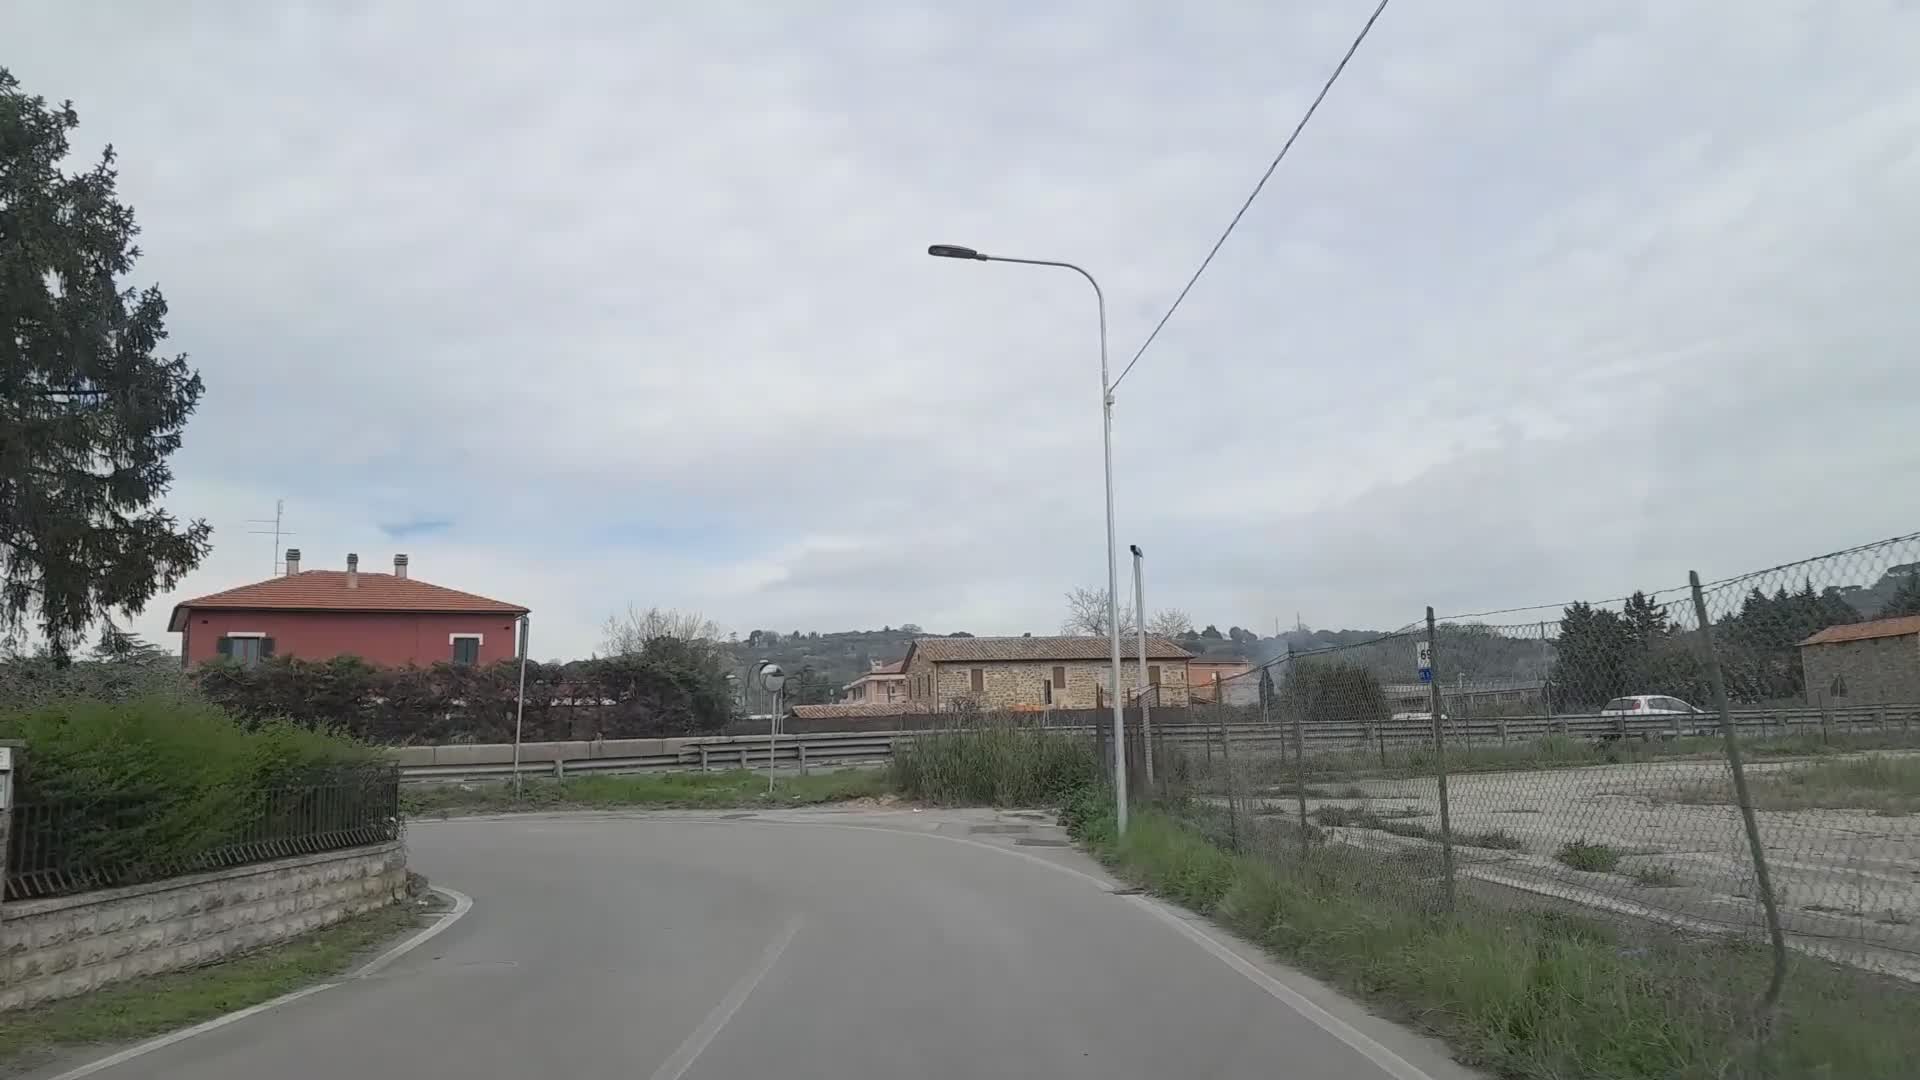 Rifatta strada a Balanzano, ma residenti chiedono nuova viabilità